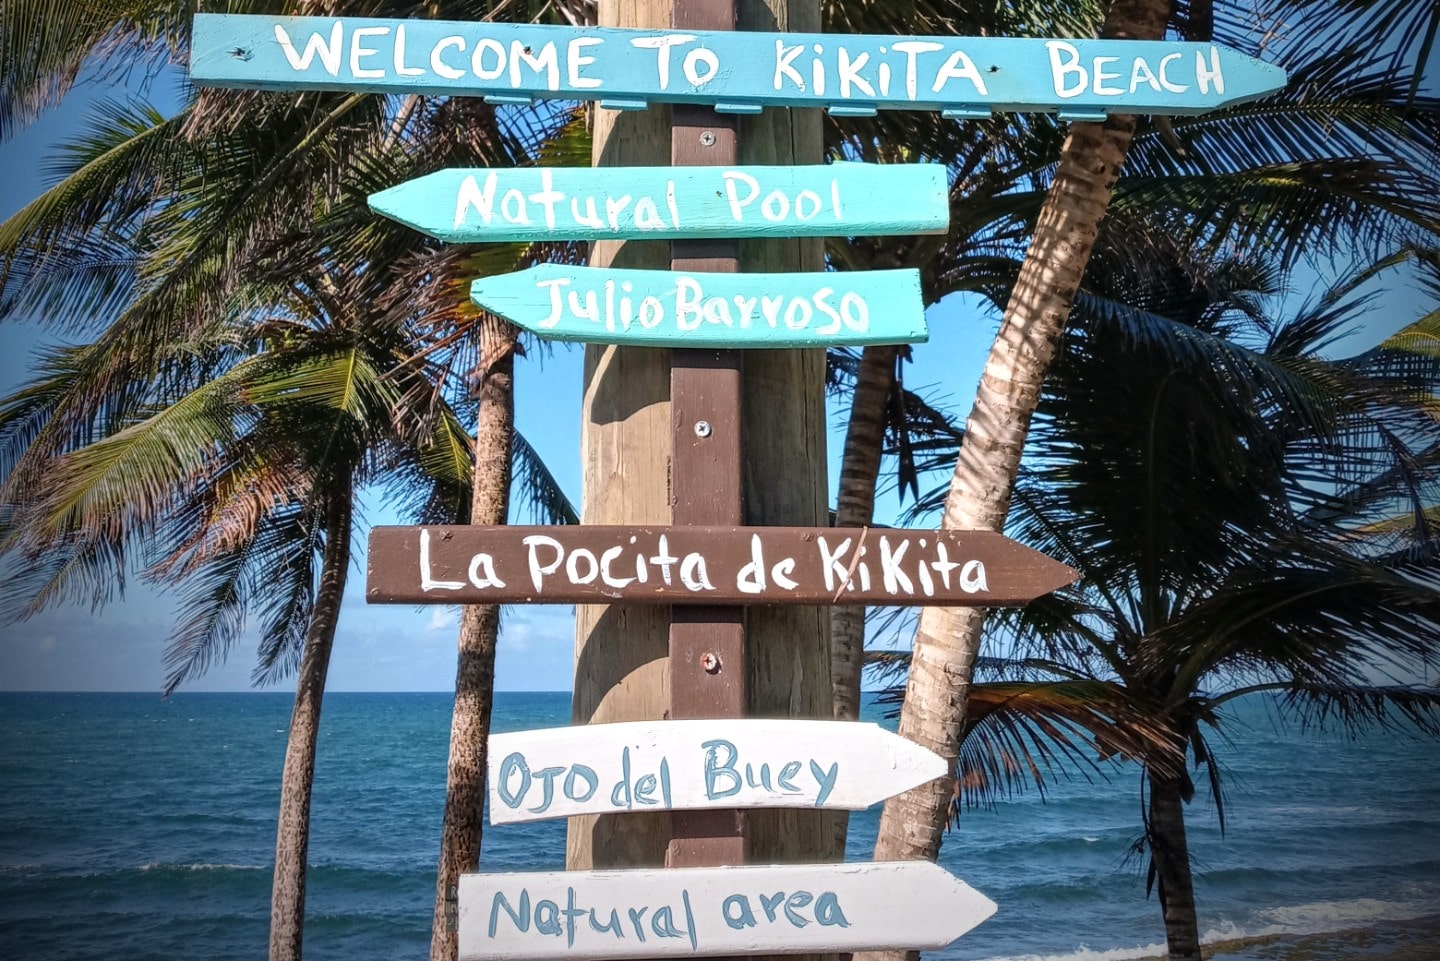 Rotulos hechos por manos de residentes, Kikita Beach es un lugar popular.